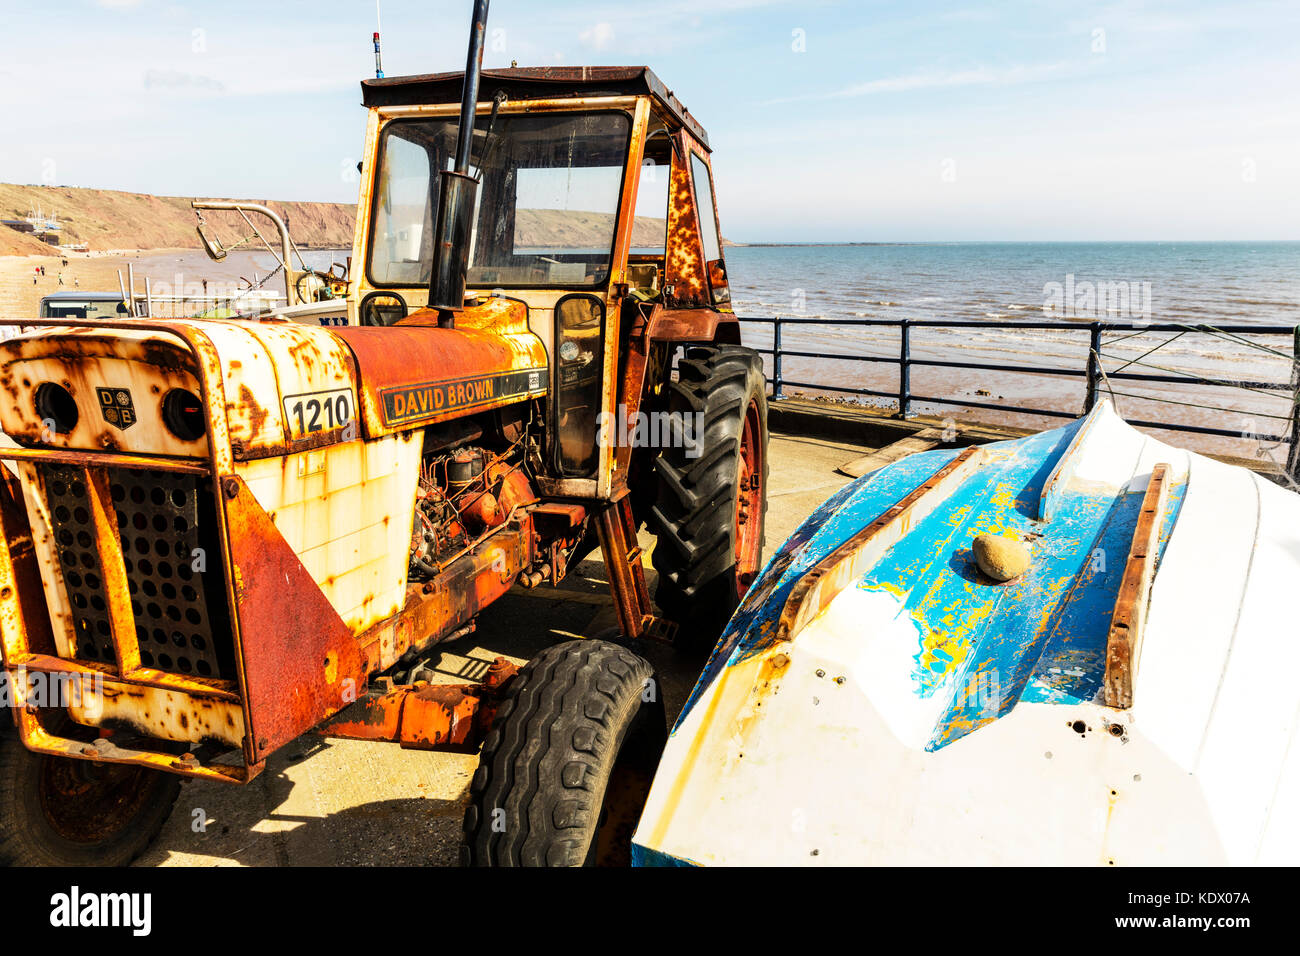 Rusty trattore utilizzato sulla spiaggia per tirare fuori le barche, trattore arrugginito, DAVID BROWN trattore 1210 vecchio trattore, antico trattore, arrugginimento trattore, trattori, Foto Stock